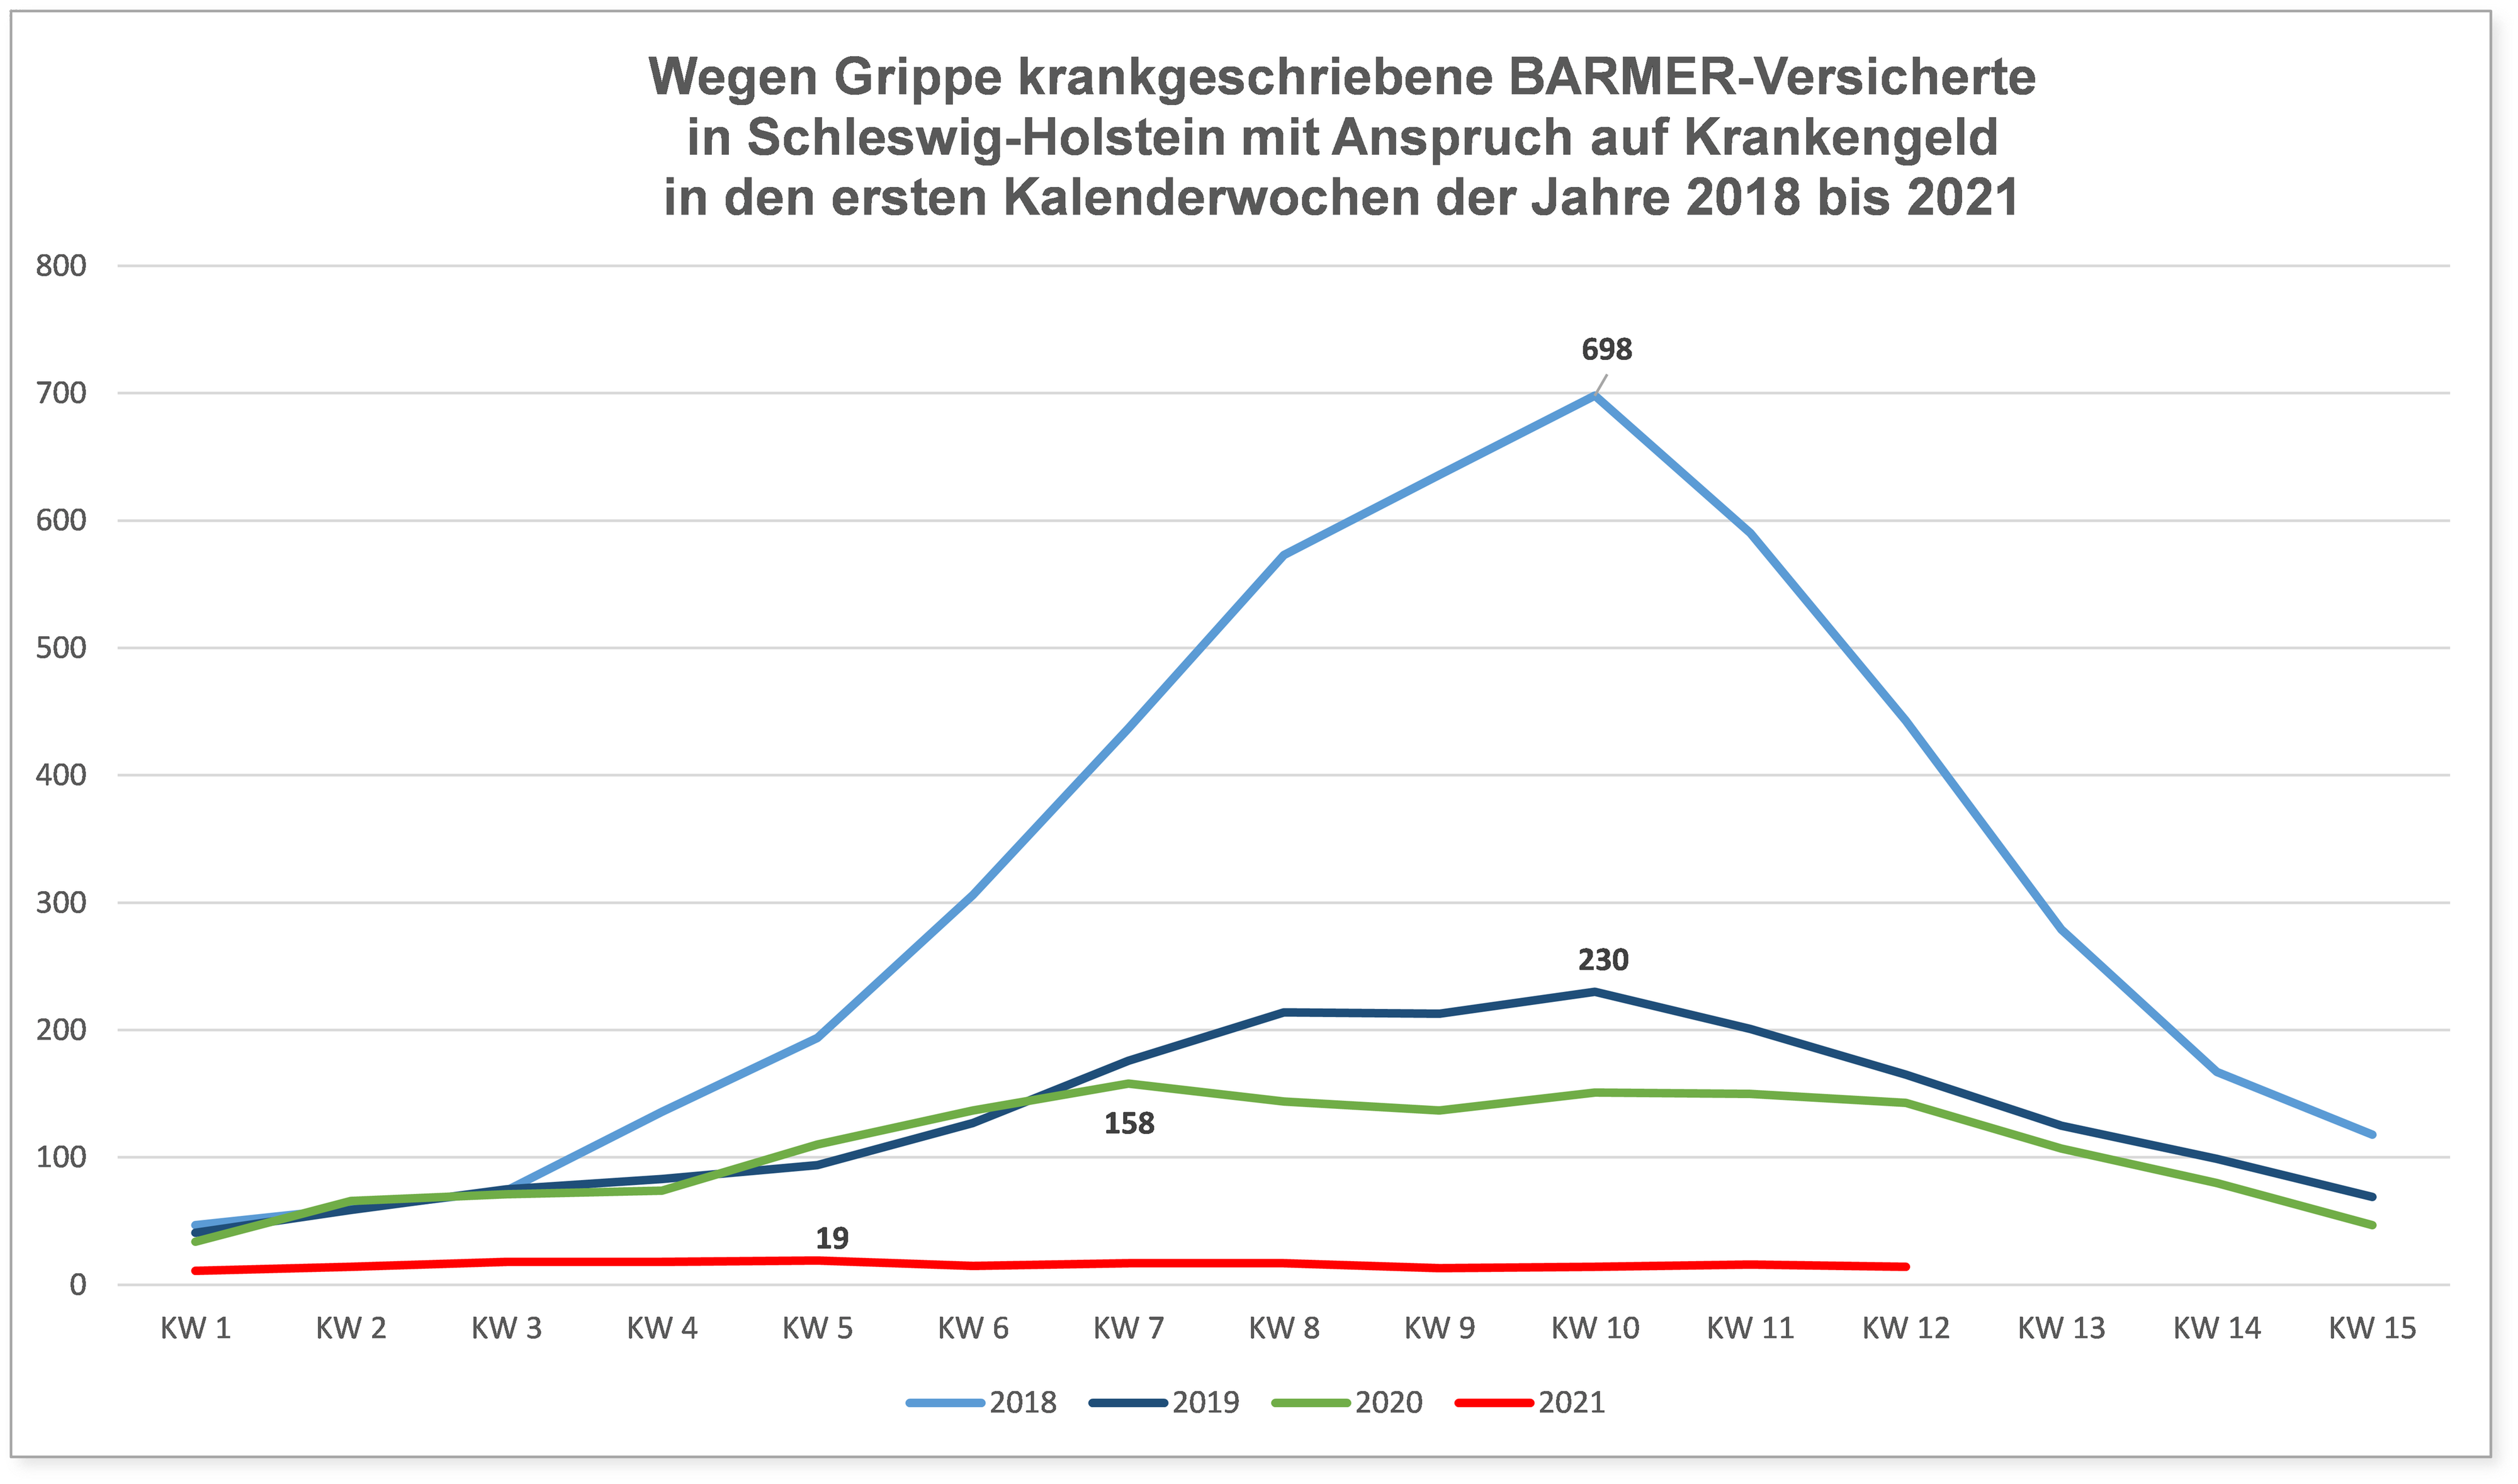 Die Grafik zeigt Verlauf von Grippeerkrankungen von Barmer-Versicherten der Kalenderwochen 1-15 2018-2021 in Schleswig-Holstein